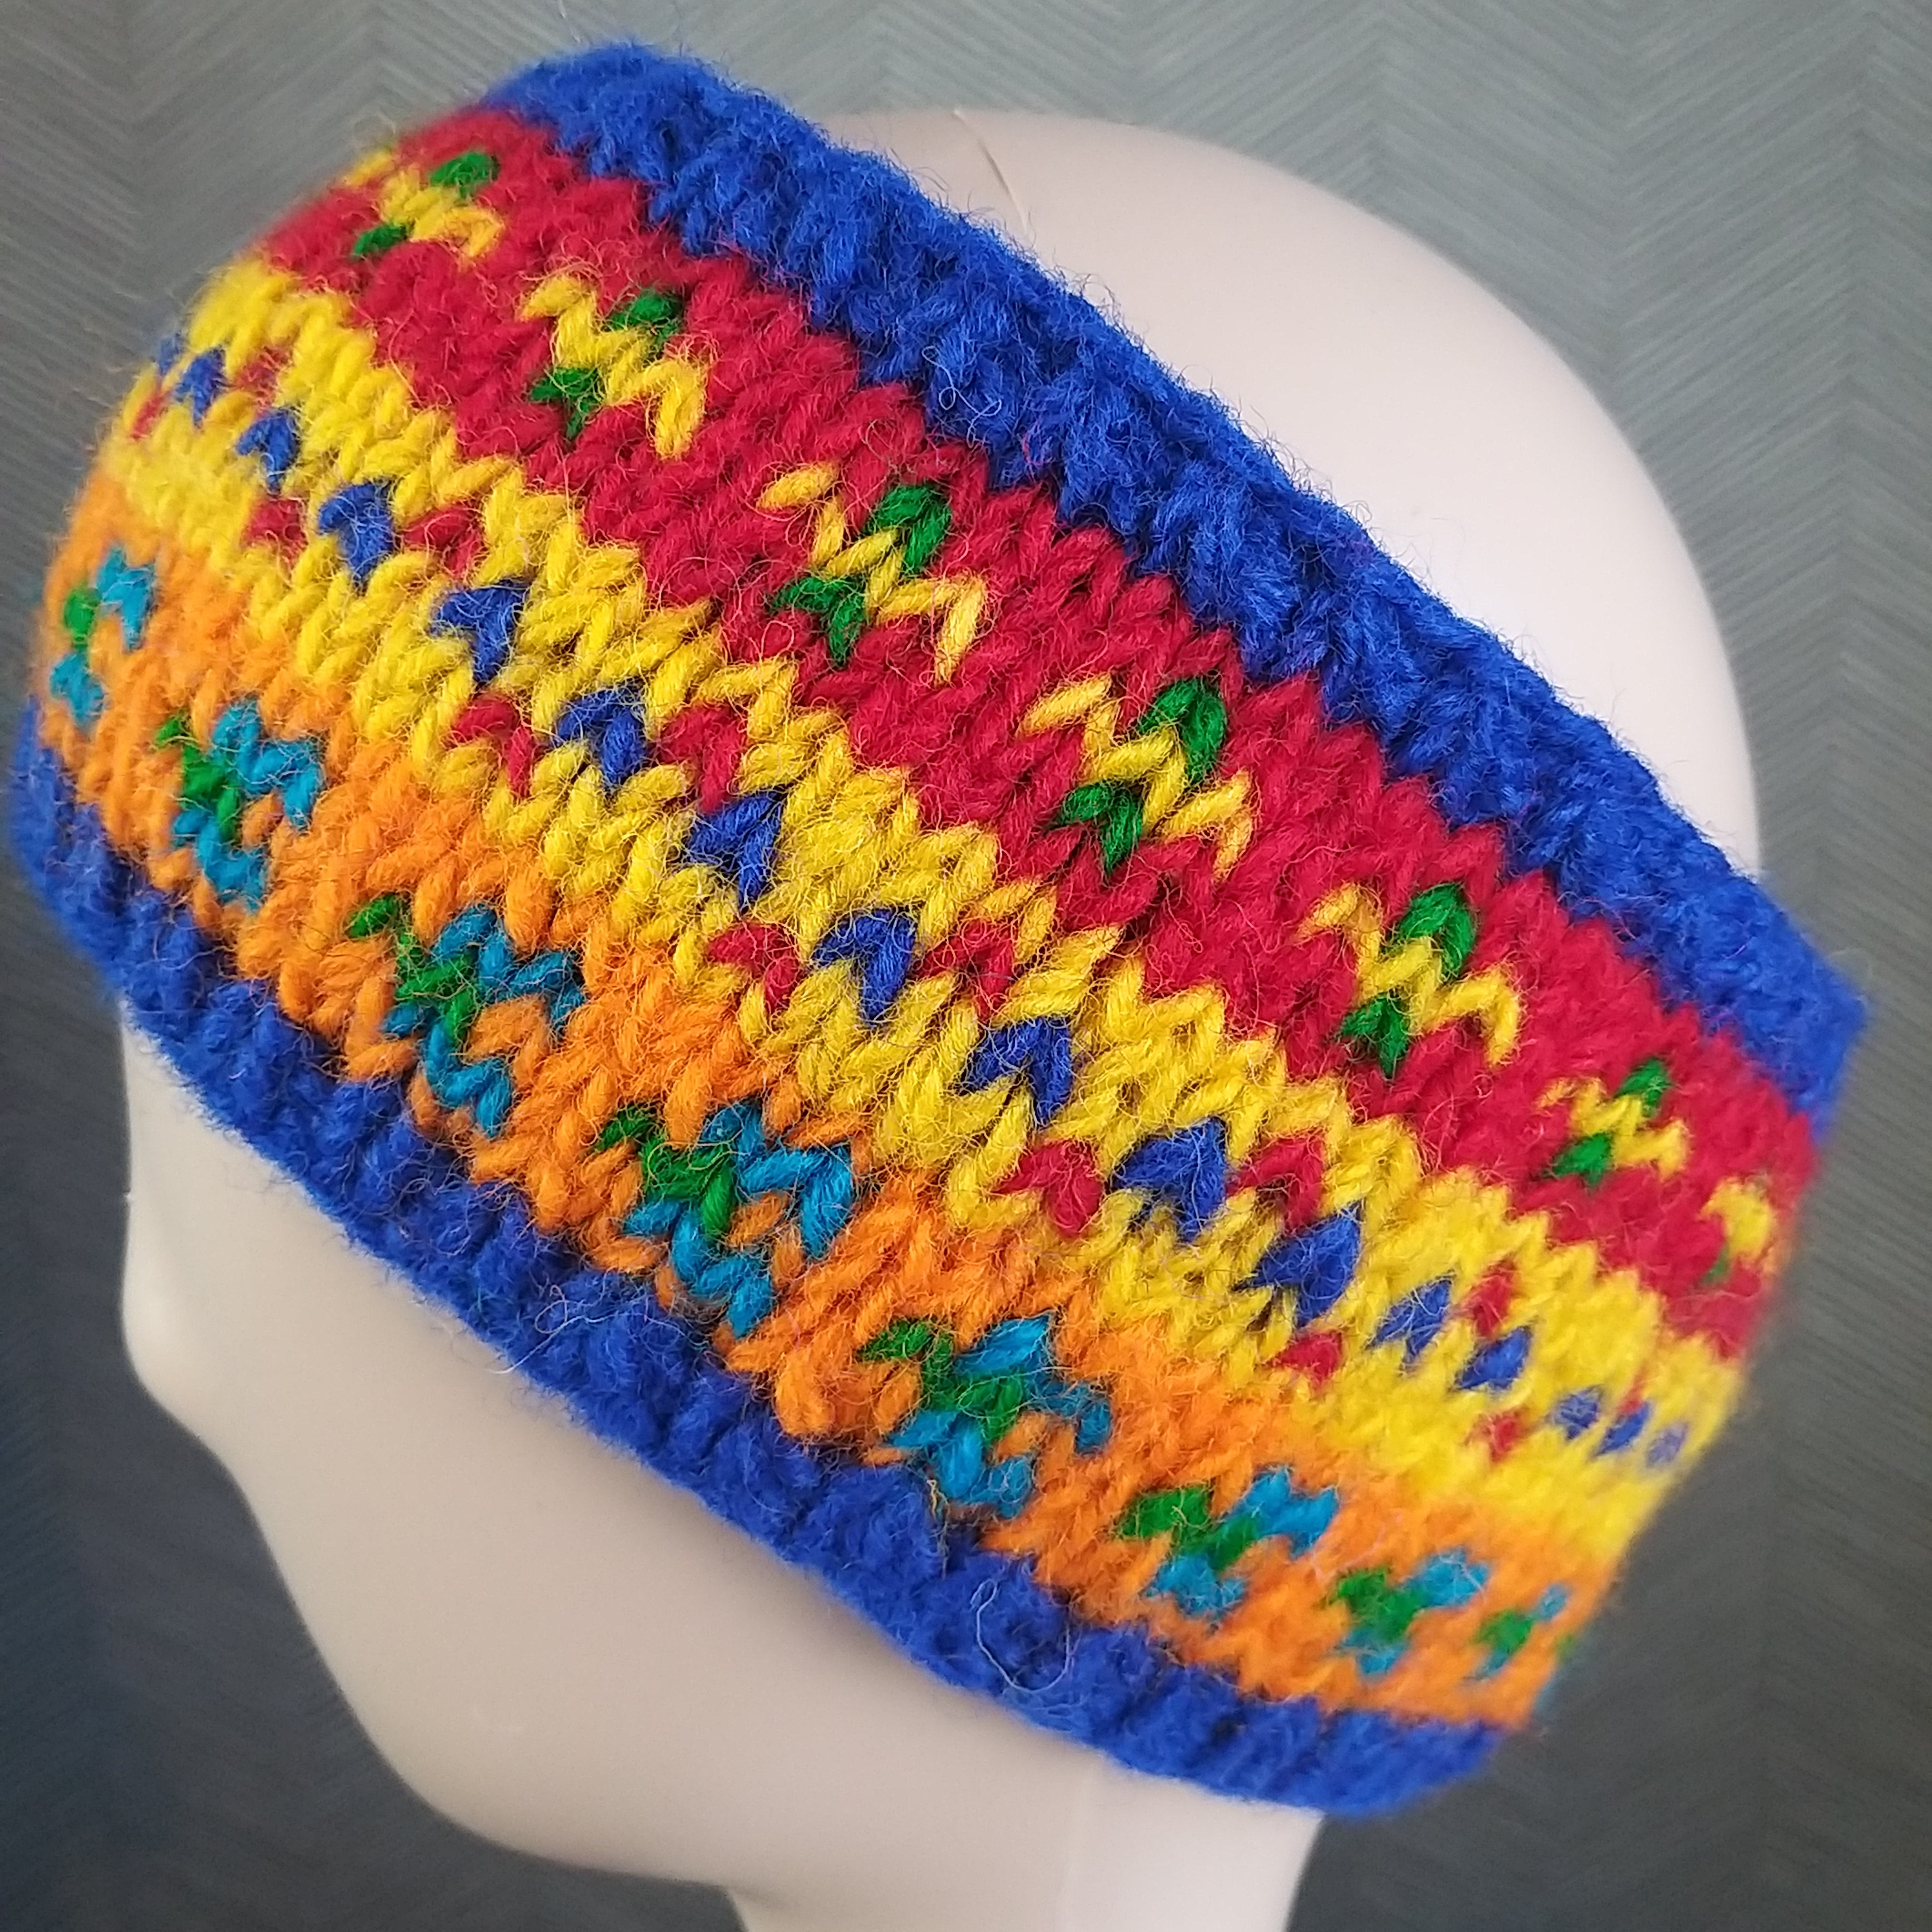 Handknit Fairisle Fleece Lined Headband